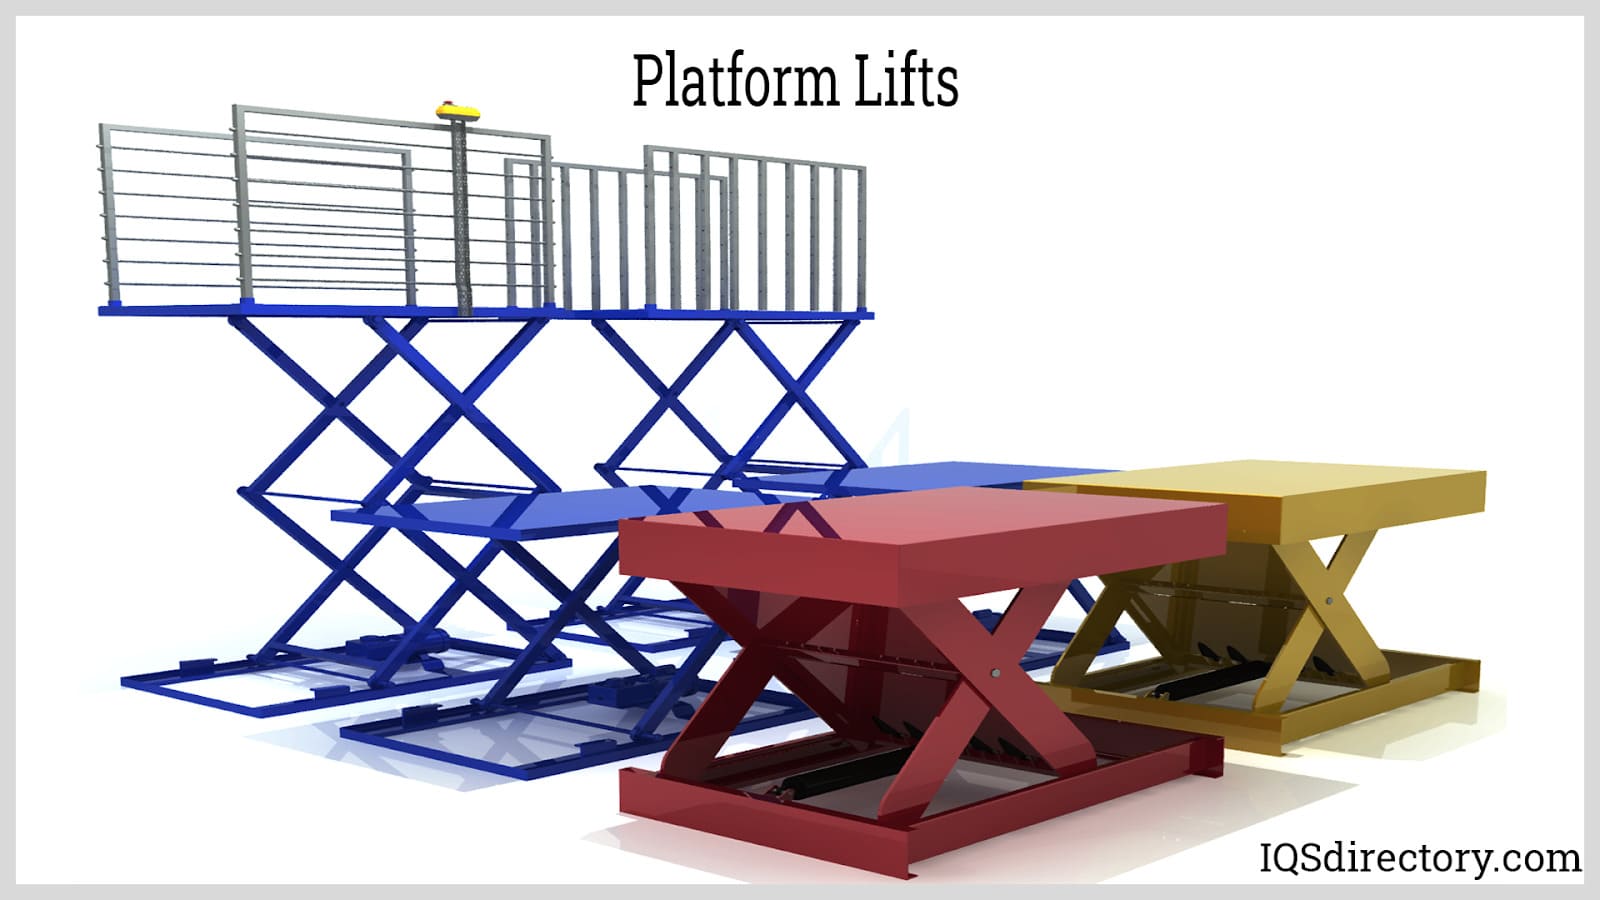 Platform Lifts